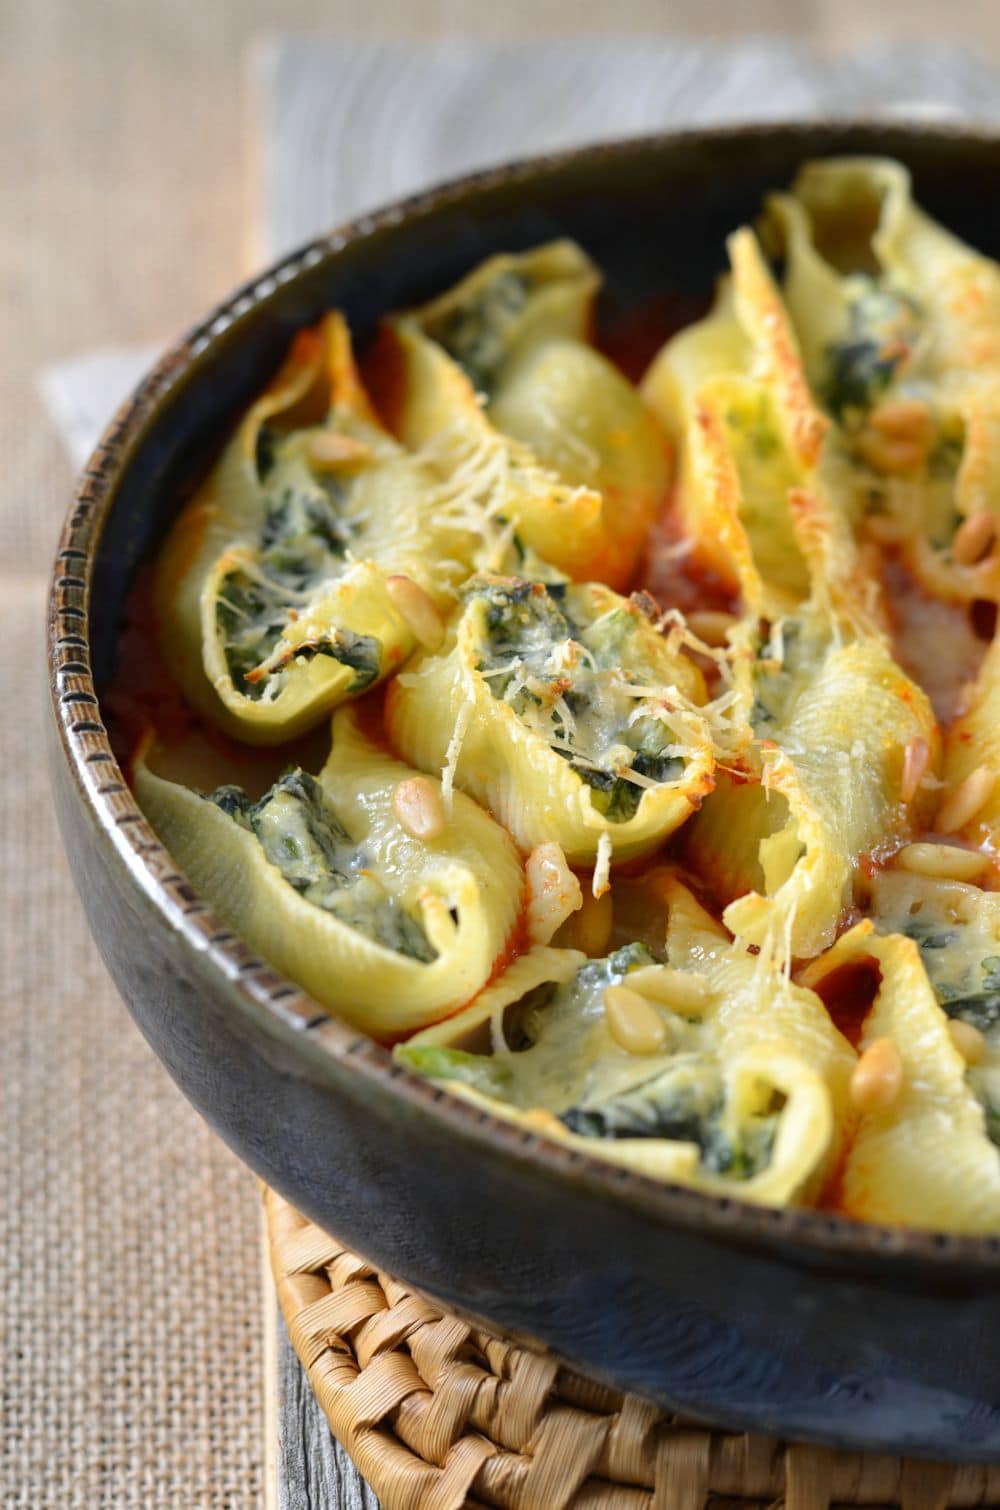 Conchiglioni pasta stuffed with ricotta and spinach